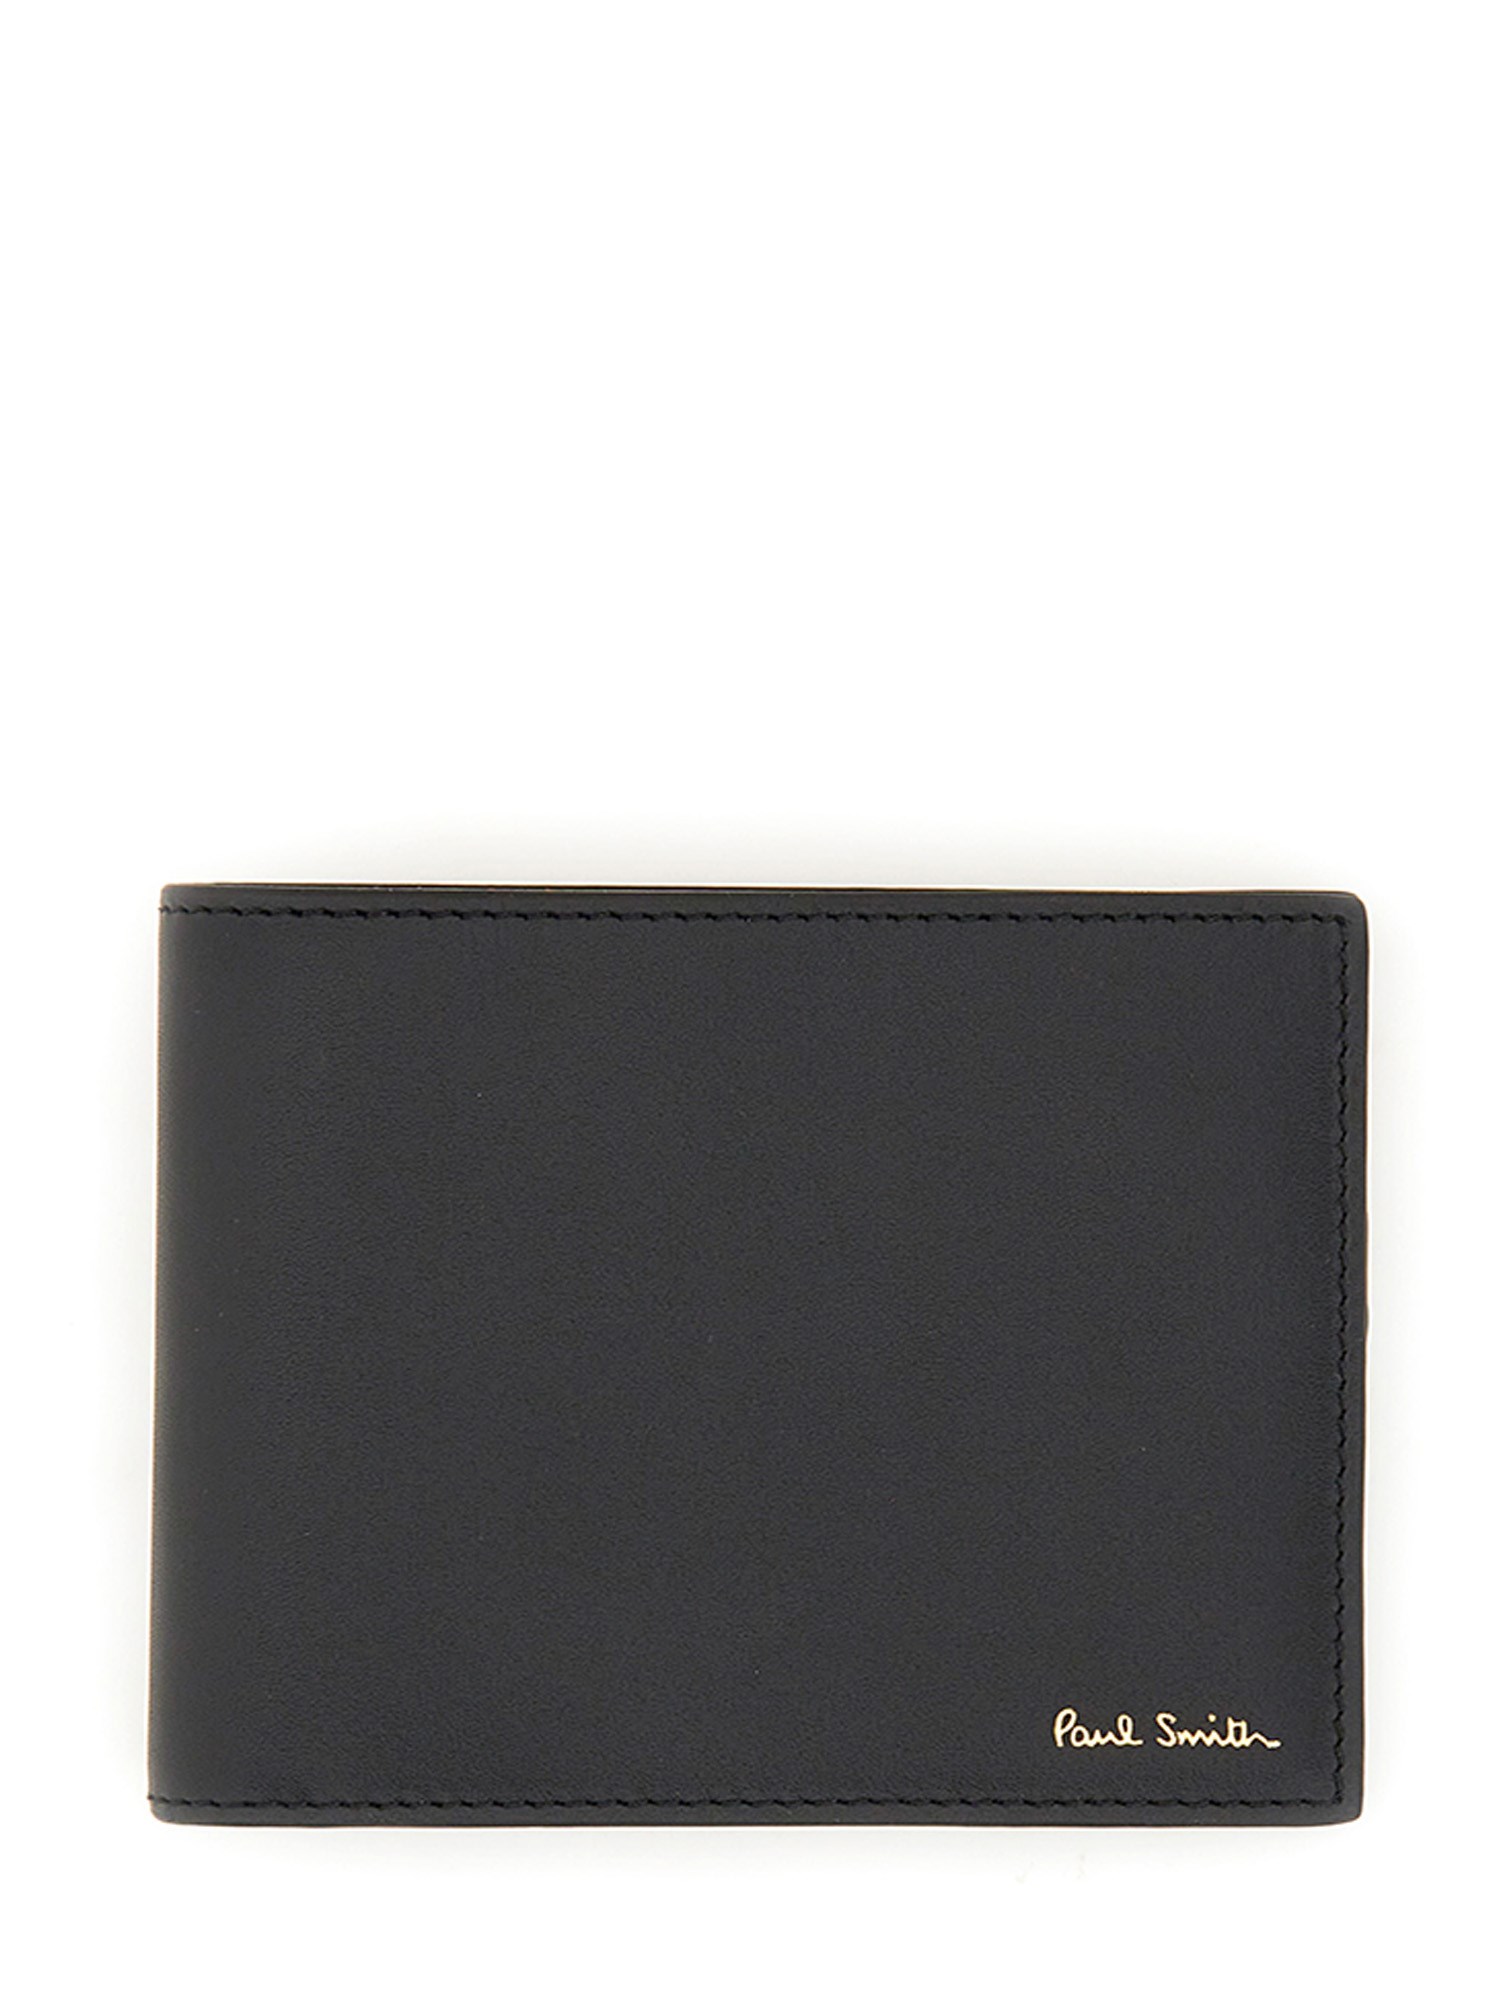 paul smith bi-fold leather wallet